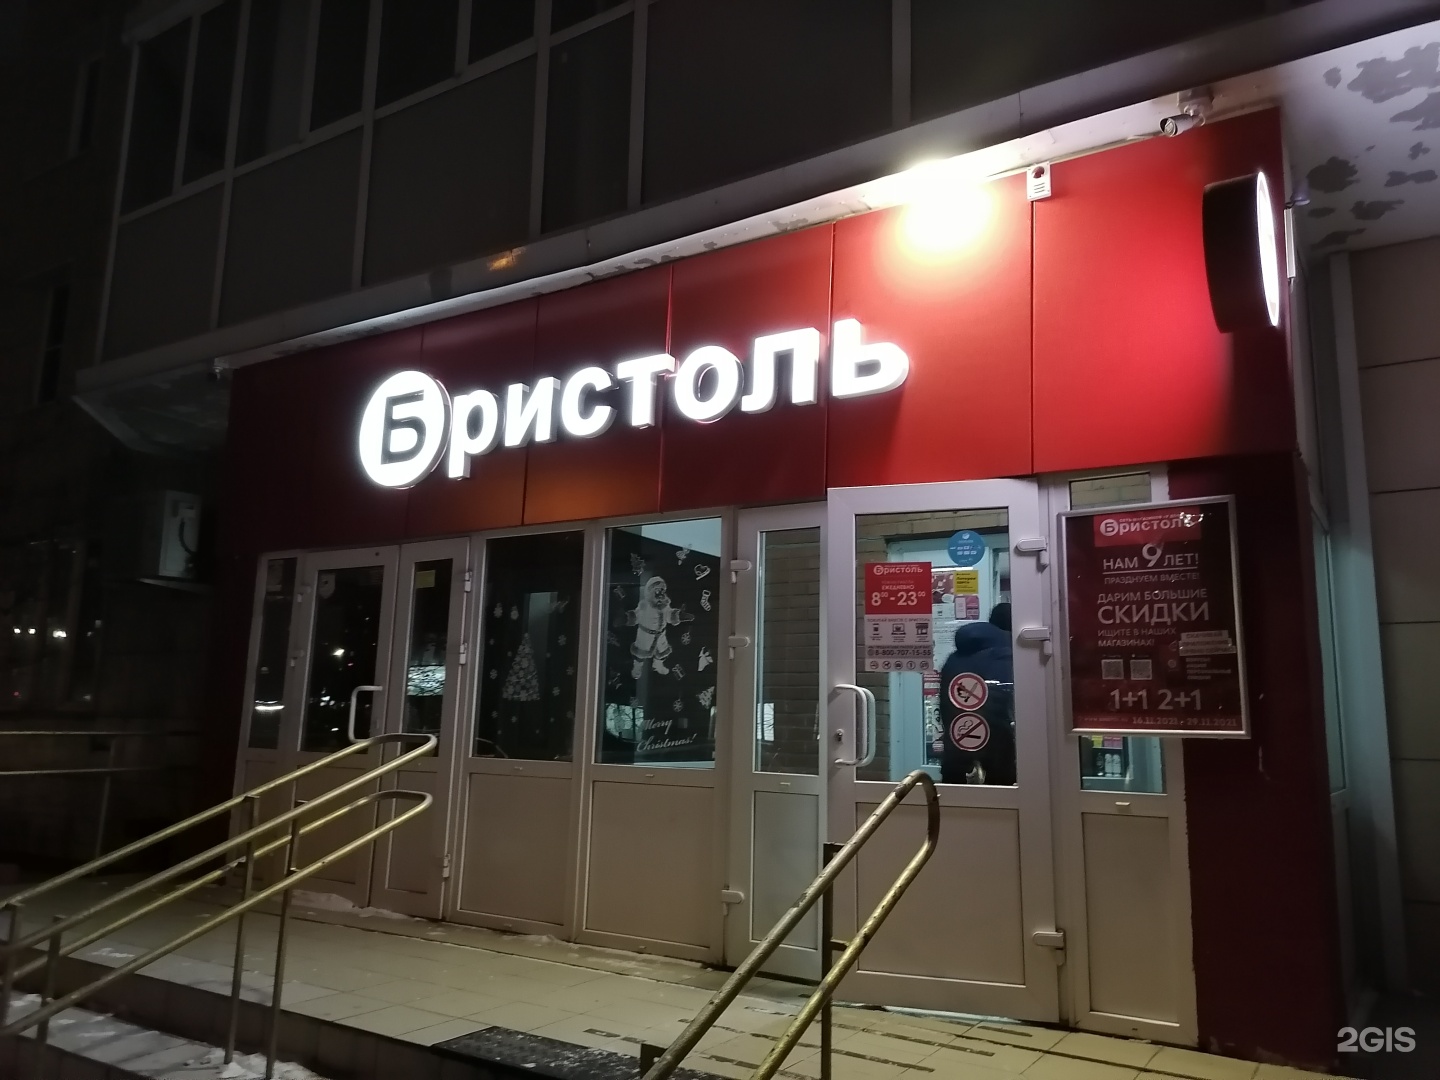 Магазин Бристоль В Красноярске